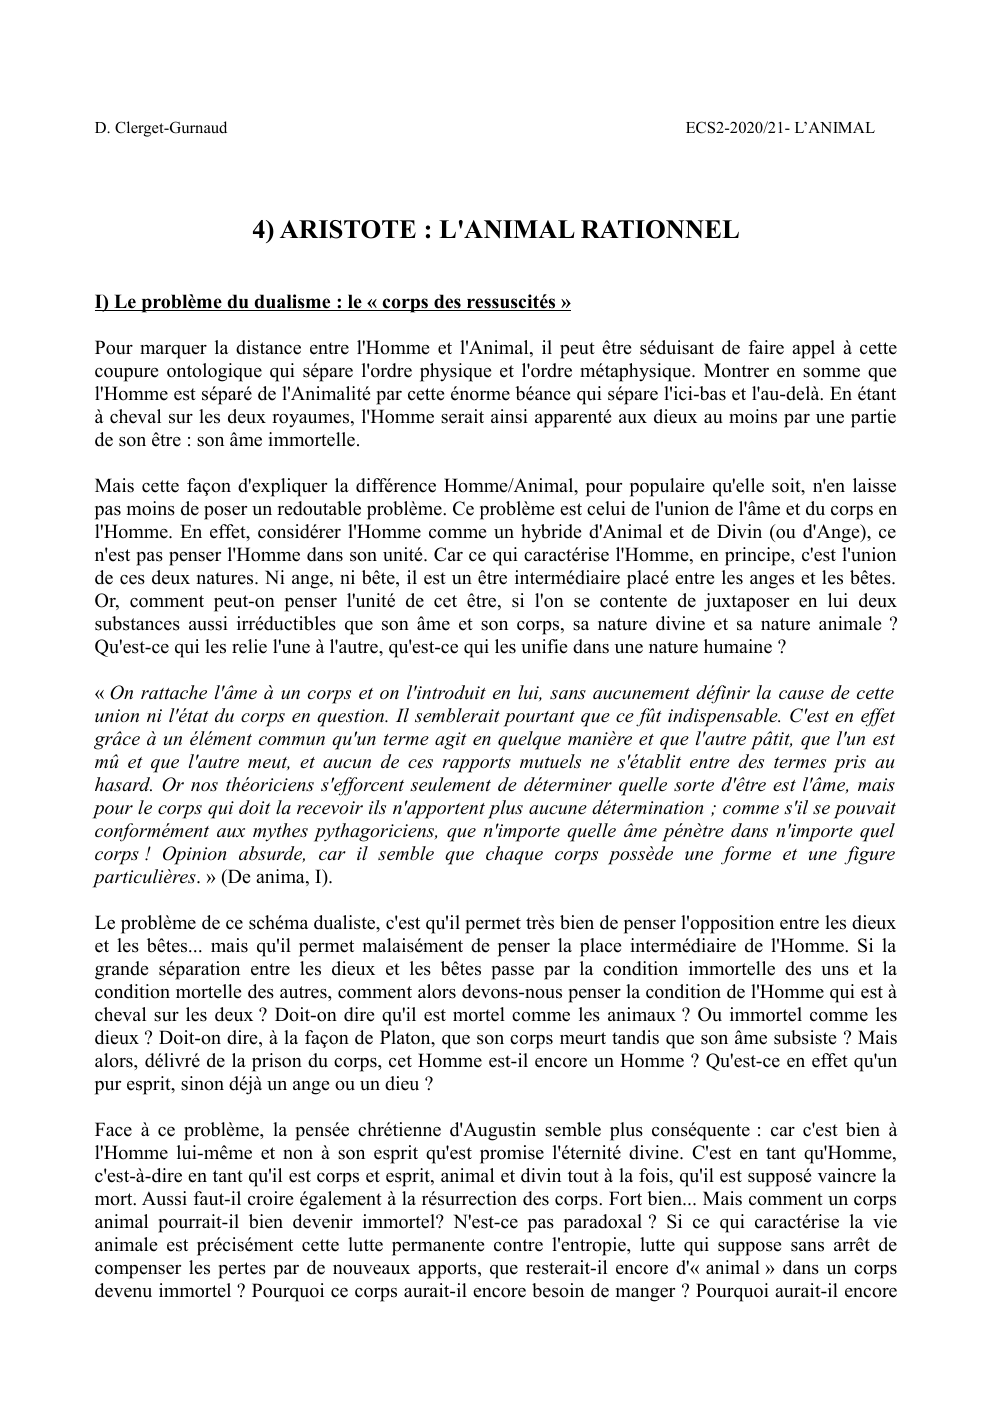 Prévisualisation du document ARISTOTE : L'ANIMAL RATIONNEL